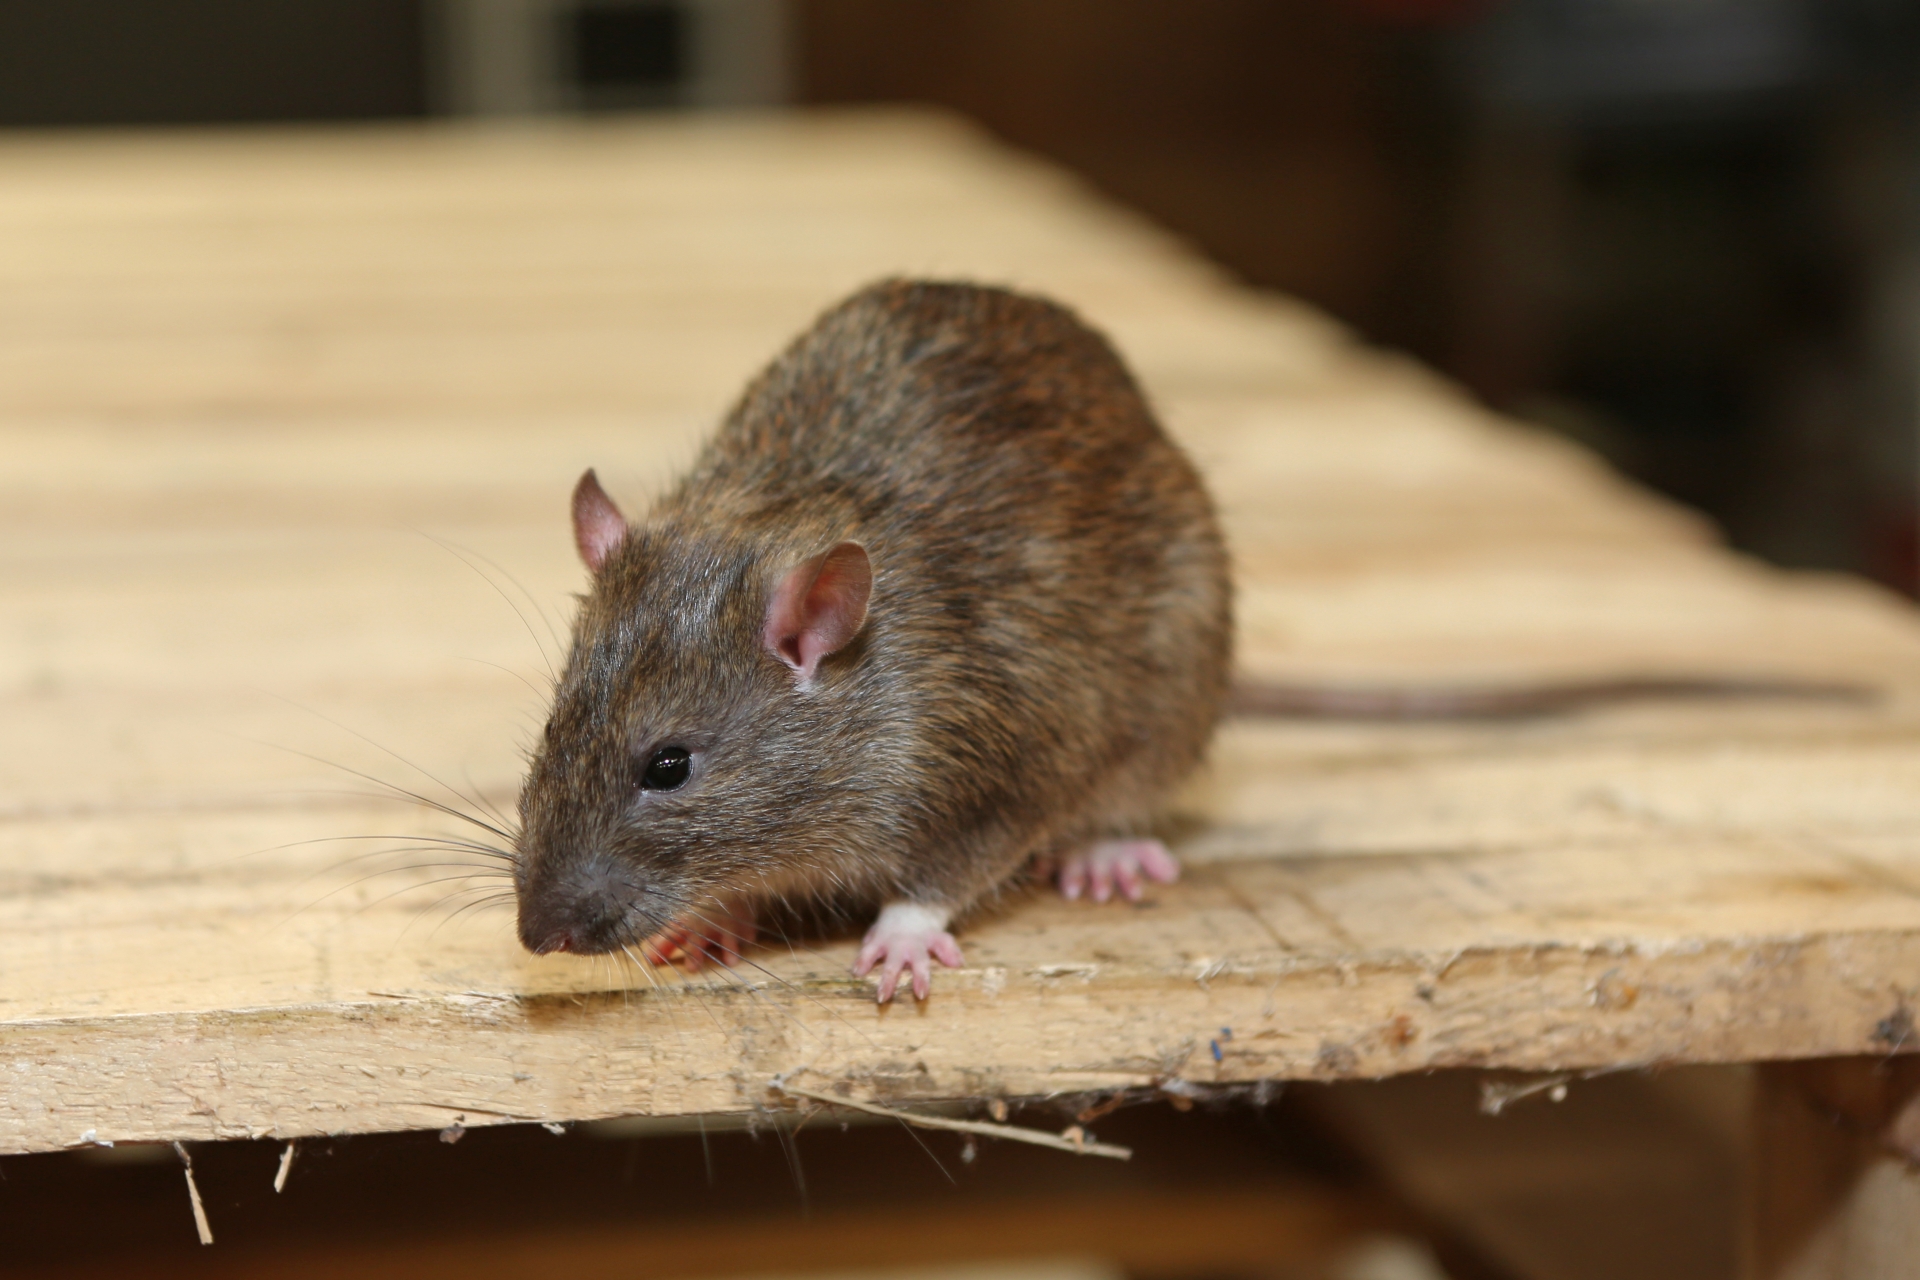 Rat extermination, Pest Control in Harefield, Denham, UB9. Call Now 020 8166 9746